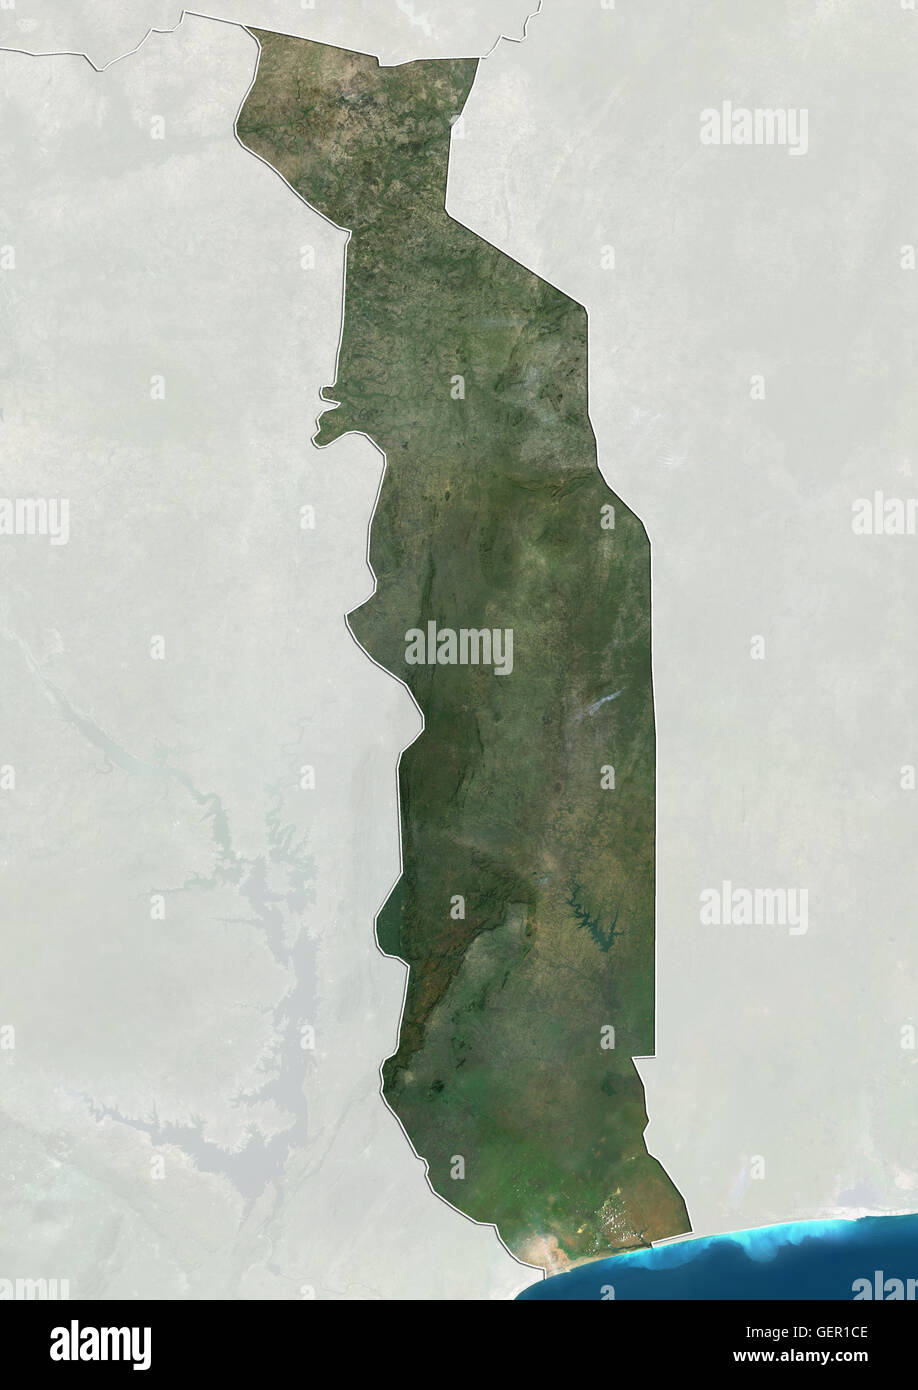 Satellitenansicht von Togo (mit Ländergrenzen und Maske). Dieses Bild wurde aus Daten von Landsat-Satelliten erworben erstellt. Stockfoto